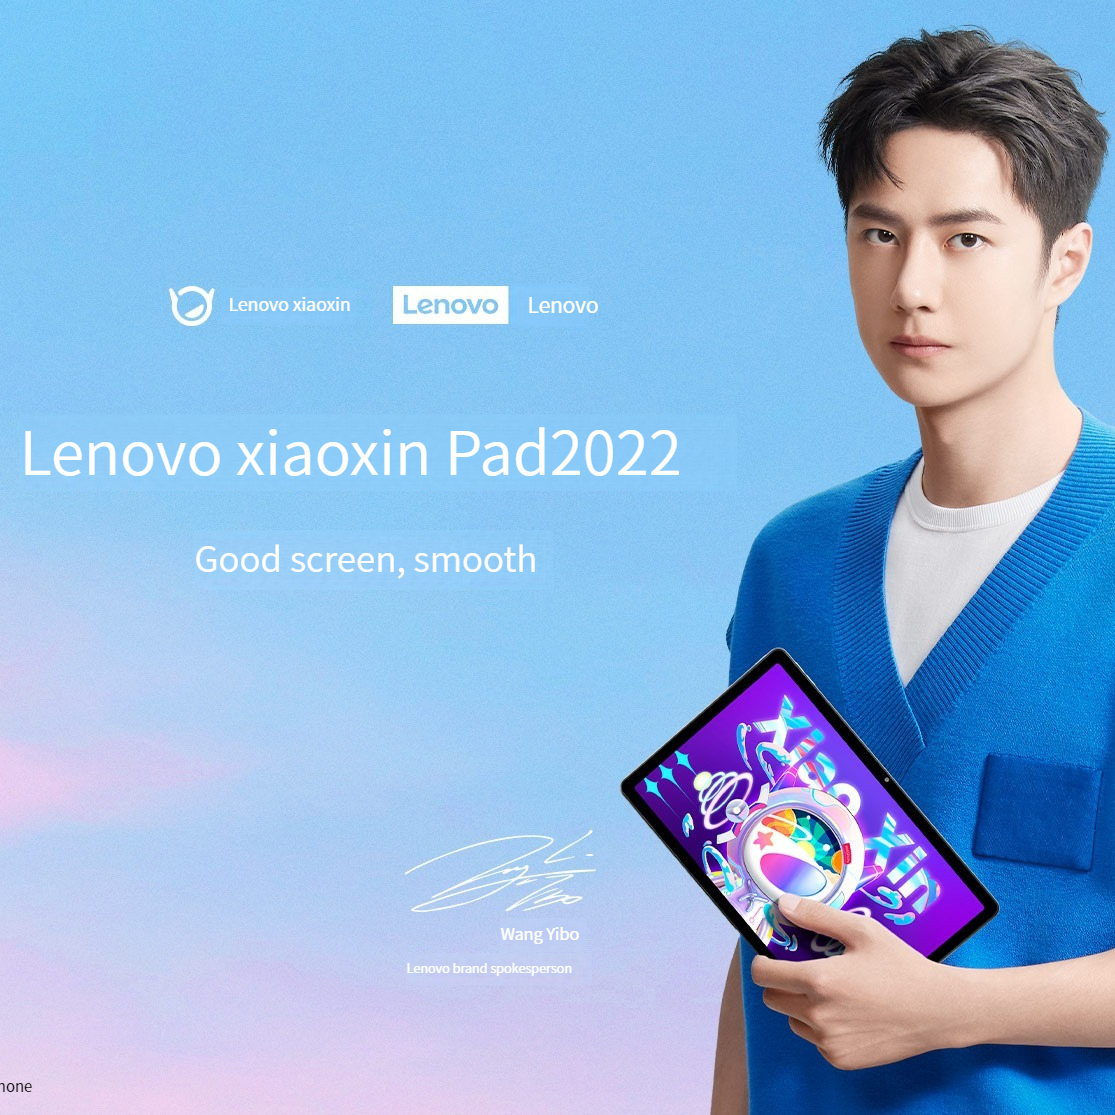 รูปภาพเพิ่มเติมเกี่ยวกับ [New Arrival]  Lenovo Tablet Xiaoxin Pad 2022 หน้าจอ 10.6 นิ้ว  4GB RAM 128GB ROM 6GB RAM 128GB ROM Global Firmware 7700mAh Andorid 12 Global ROM ภาษาไทยพร้อมใช้งาน ประกัน 1 ปี